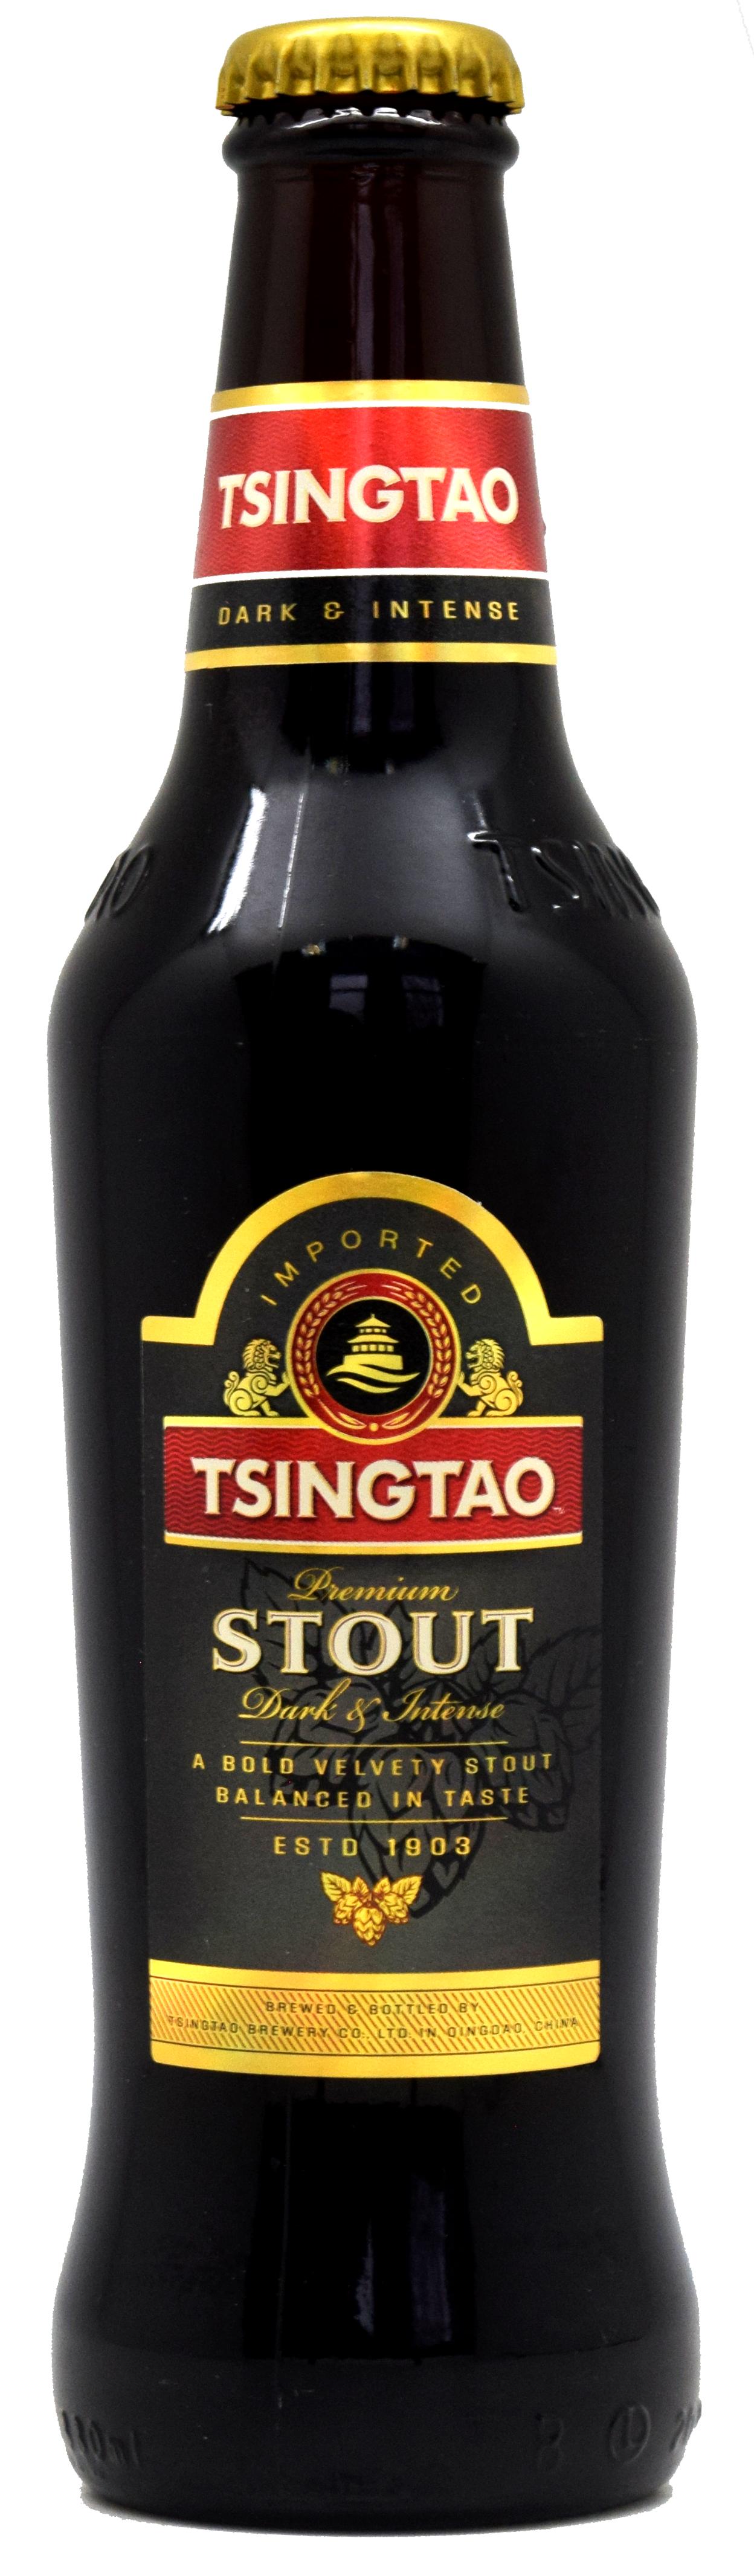 Пиво Tsingtao Premium Stout темное фильтрованное 7,5% 330 мл., стекло